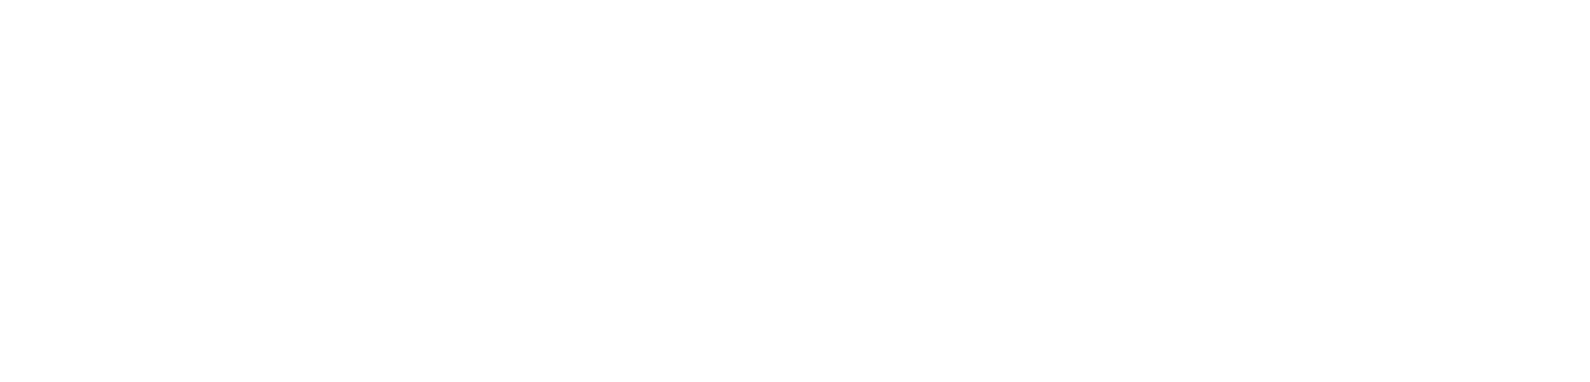 BevWorks Brands Logo